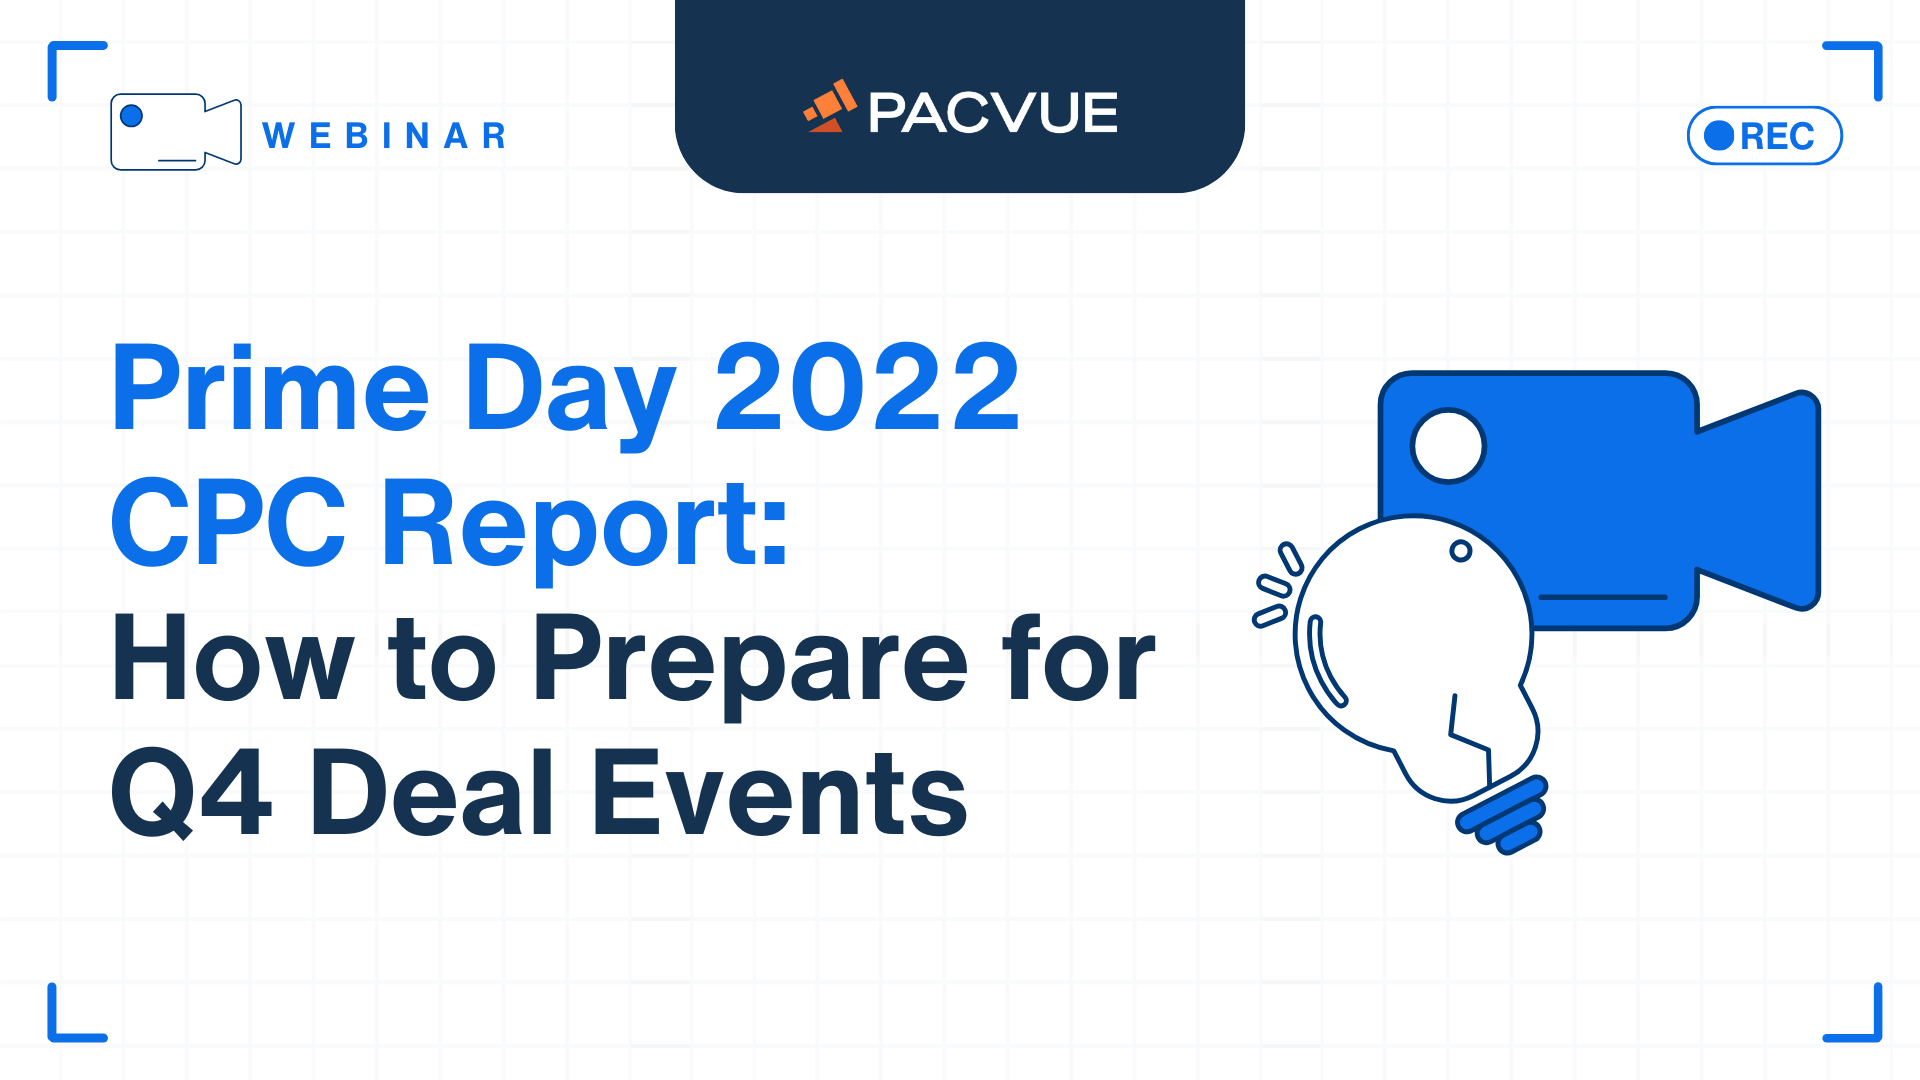 Amazon Prime Day 2022 CPC-Bericht: Wie man sich auf Q4 Deal Events vorbereitet